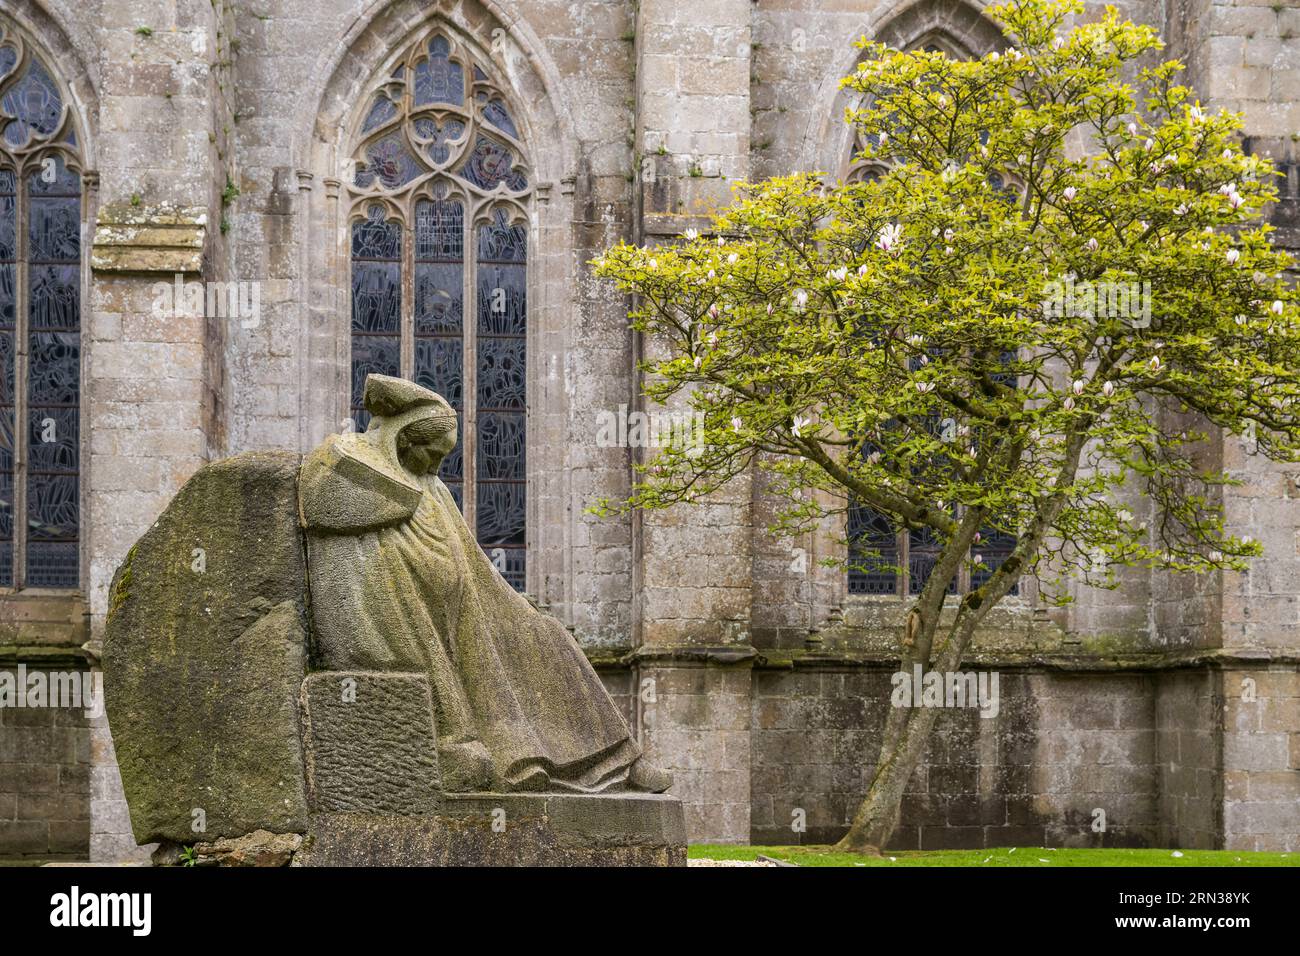 Frankreich, Côtes-d'Armor, Tréguier, Kathedrale Saint Tugduum, Denkmal für den toten La Douleur (Schmerz) des Bildhauers Francis Renaud, der eine bretonische Frau darstellt, die im traditionellen Witwenmantel mit dem Toukenn-Kopfschmuck gekleidet ist Stockfoto